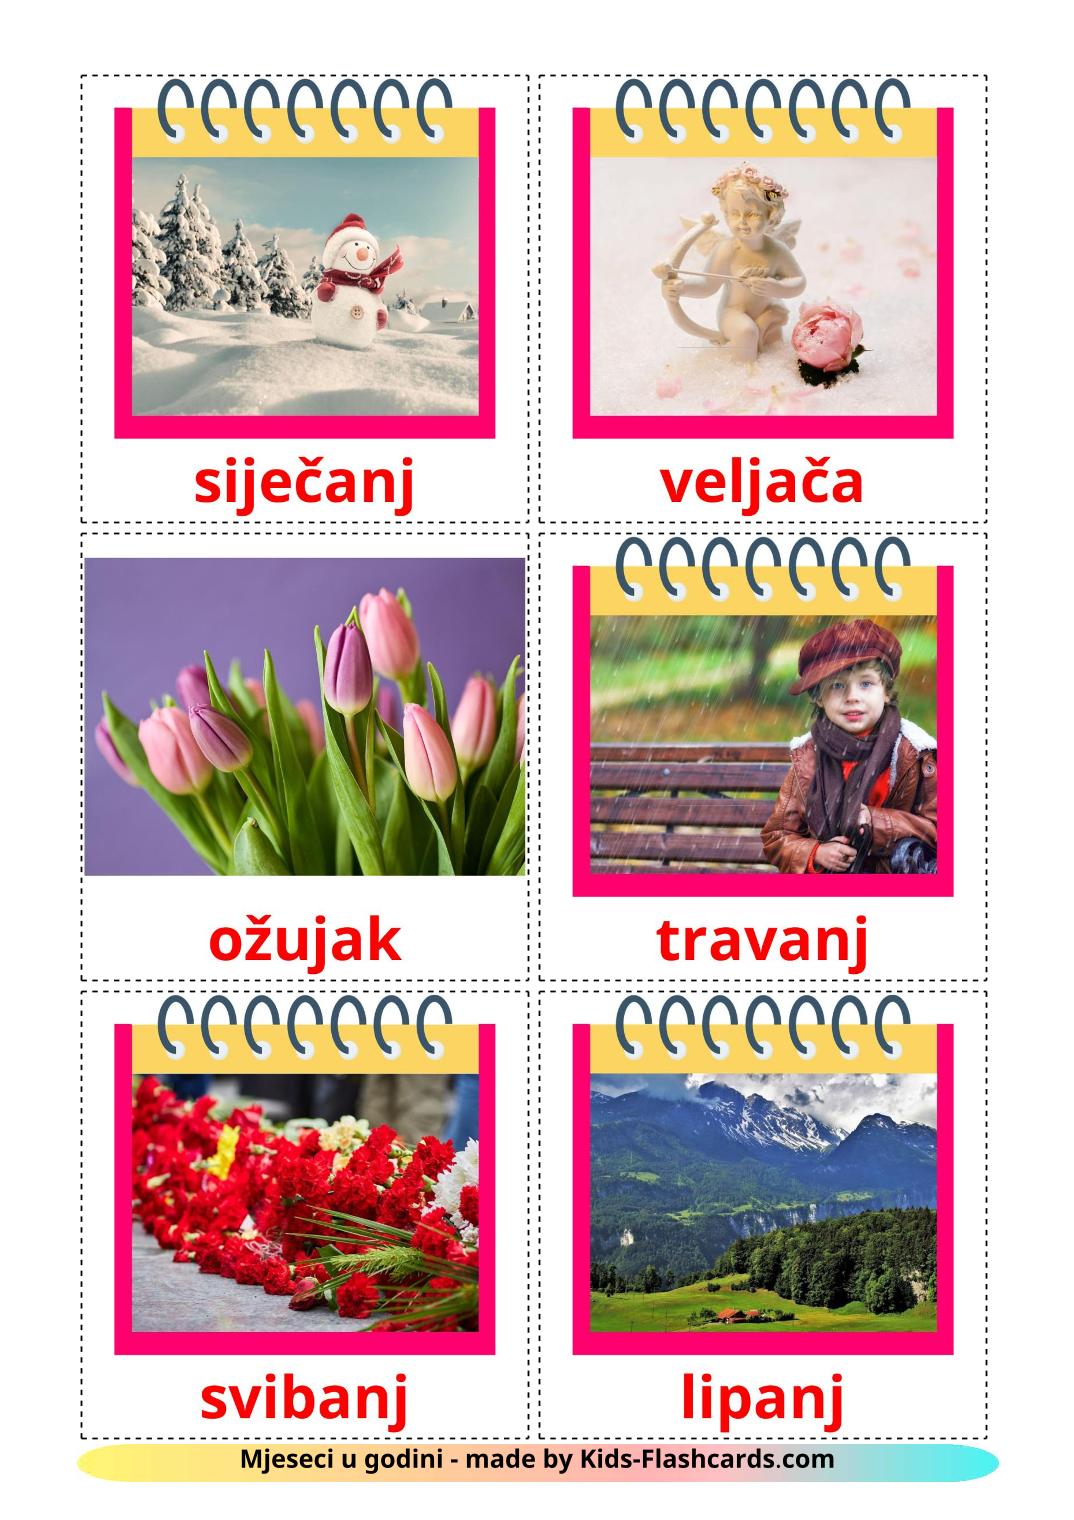 Les Mois de l'année - 12 Flashcards croata imprimables gratuitement